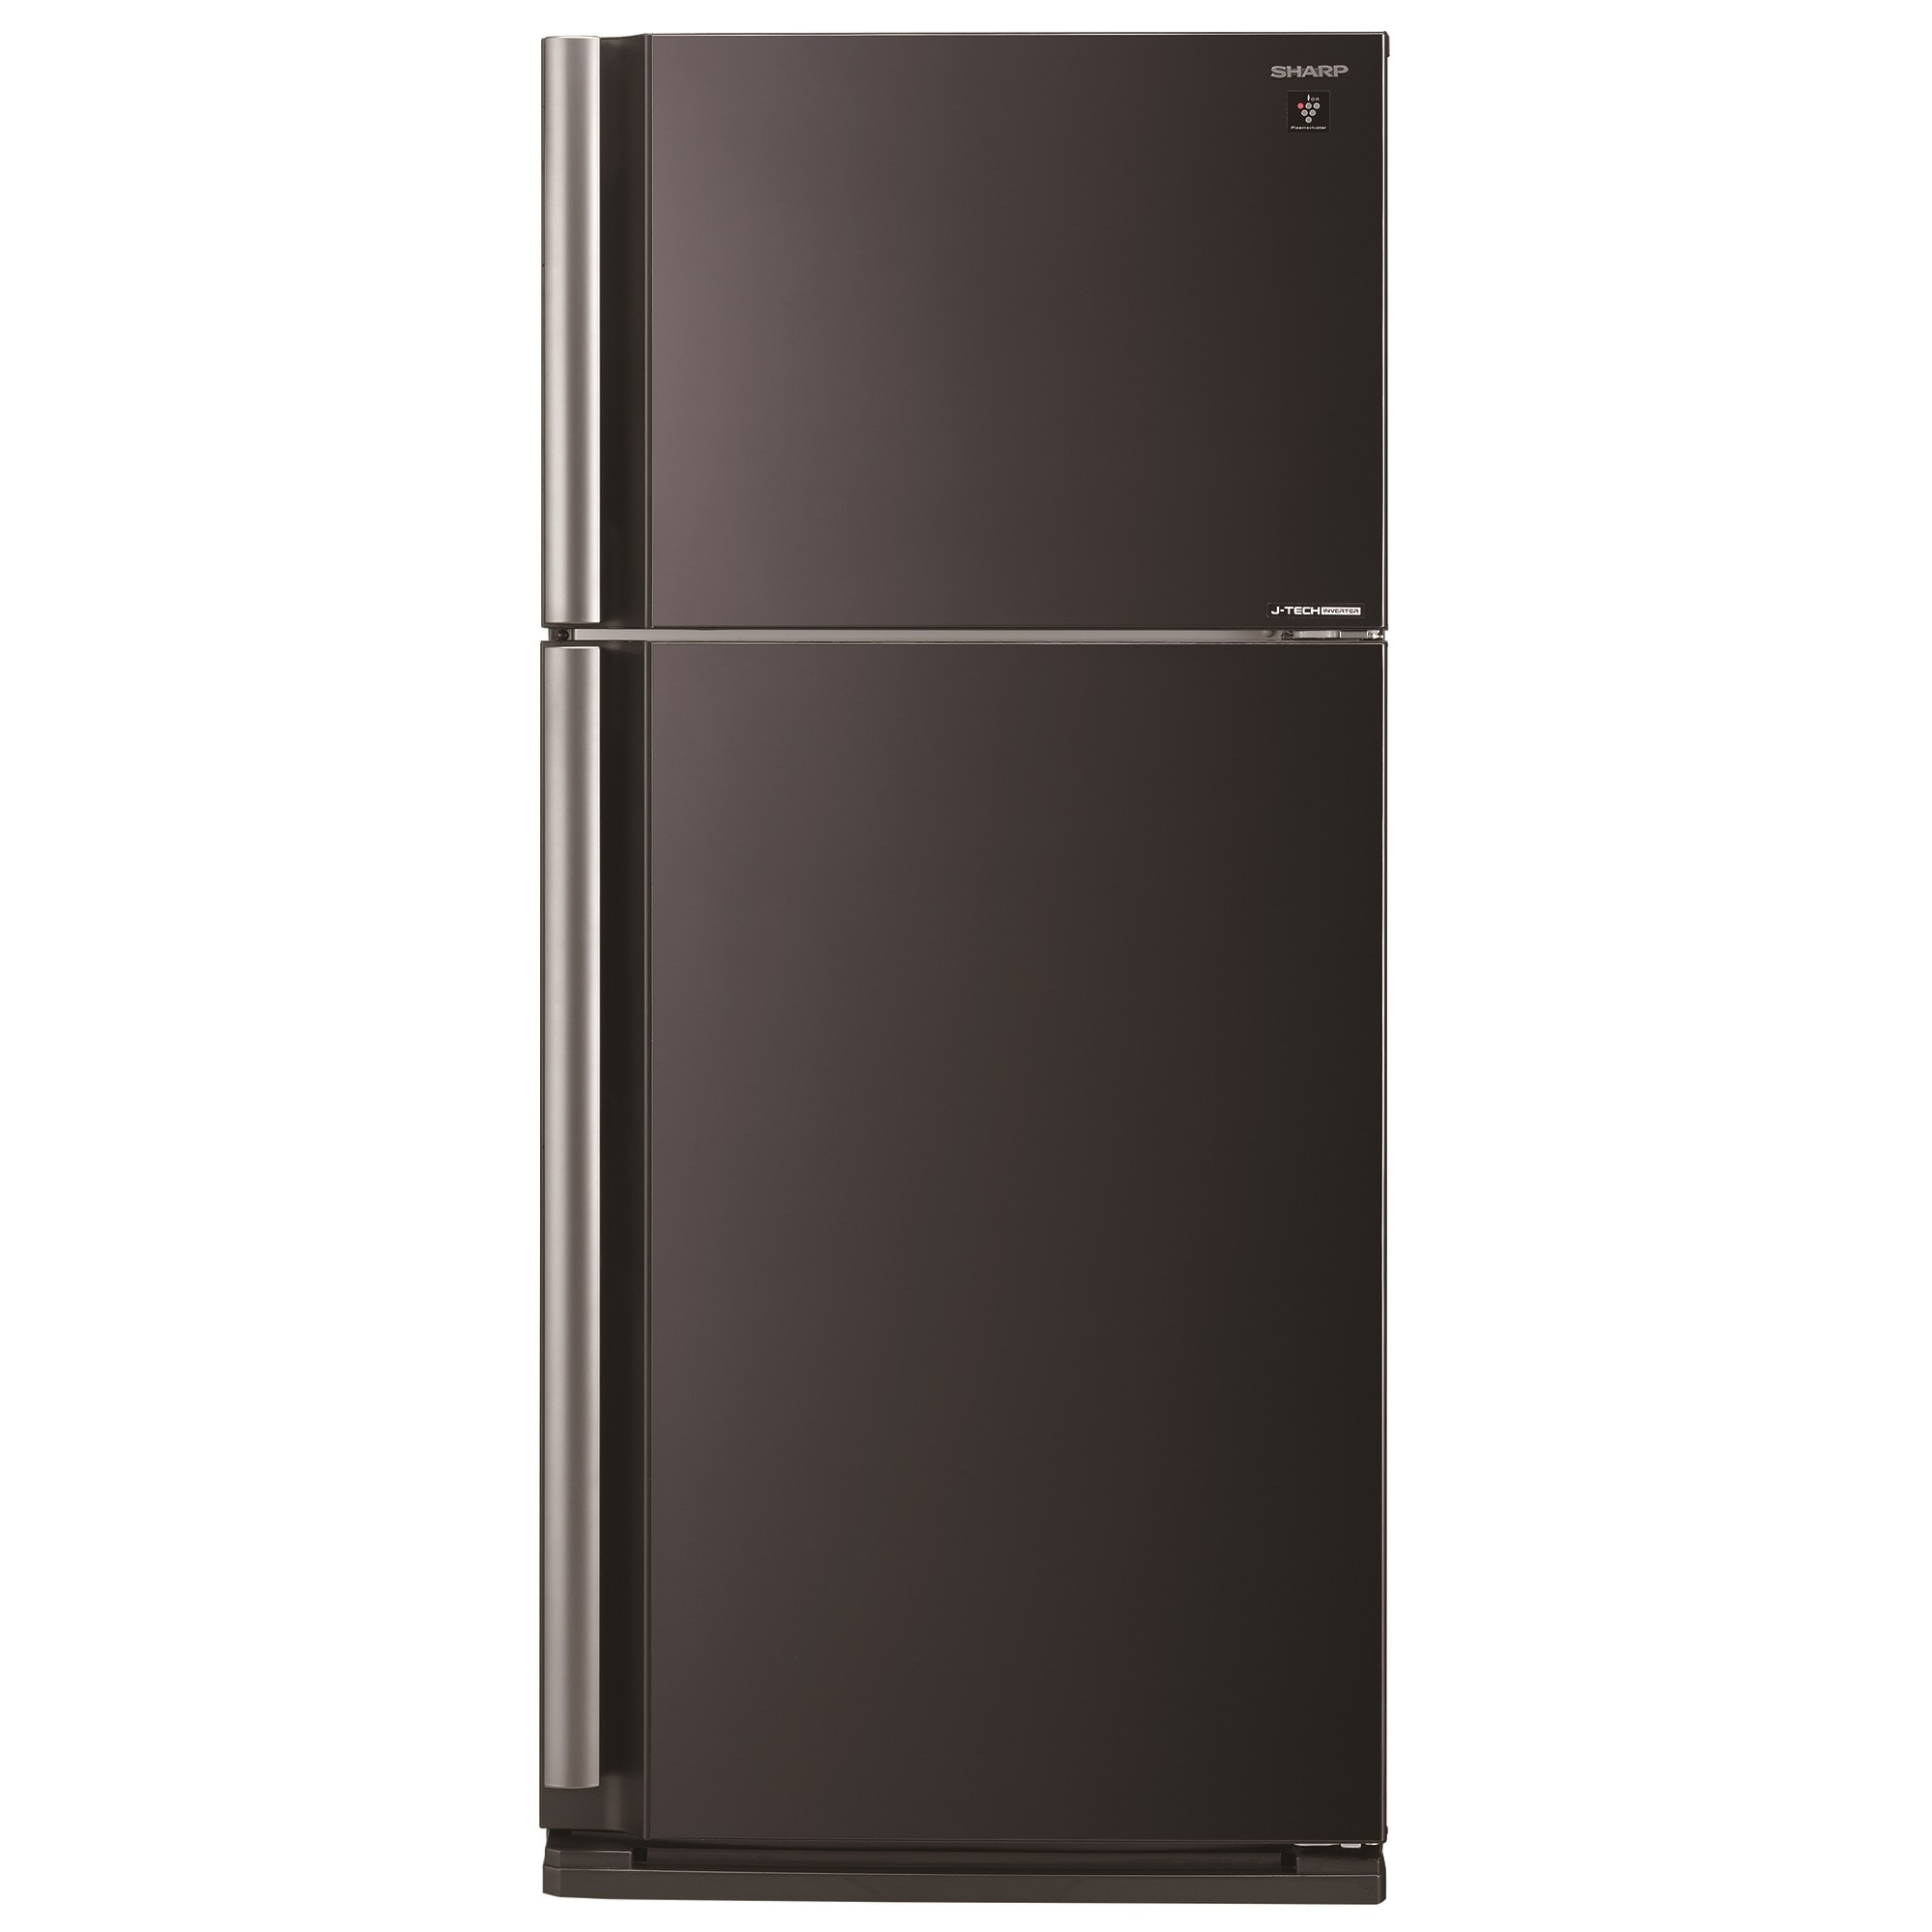 Хладилник Sharp SJXE680MBK с обем от 585 л.